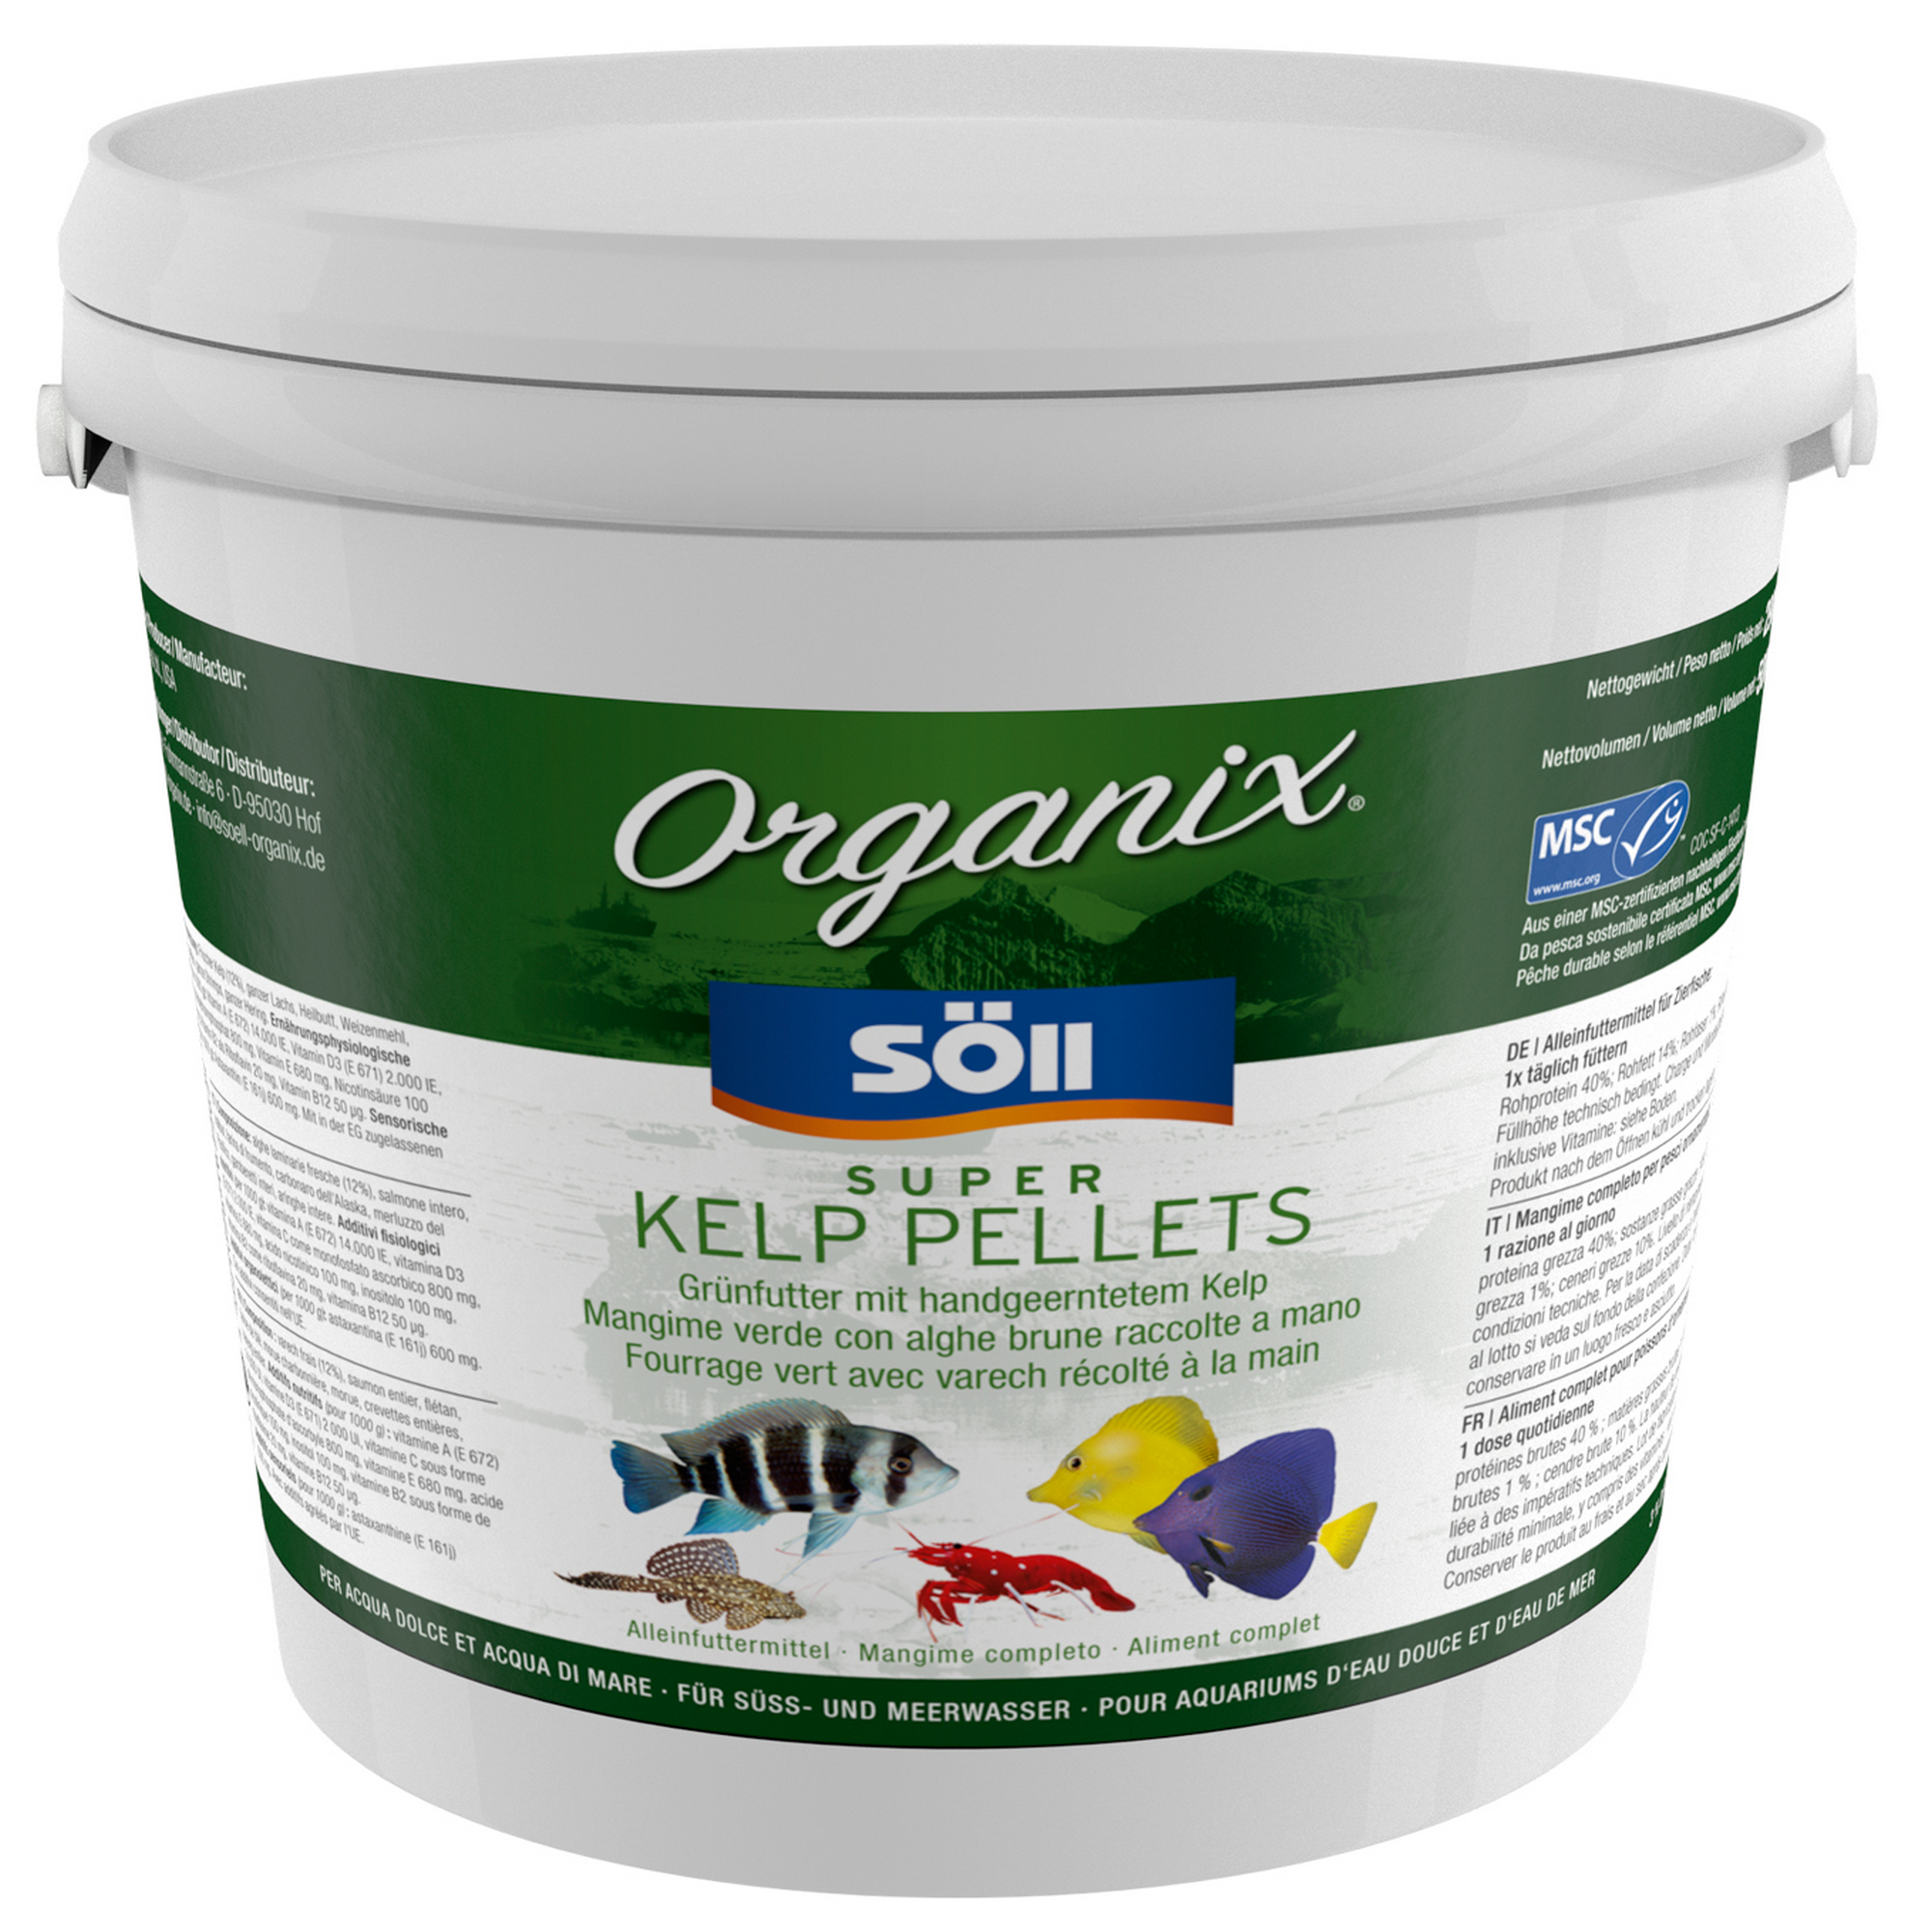 Organix Super Kelp Pellets 5 l + product picture